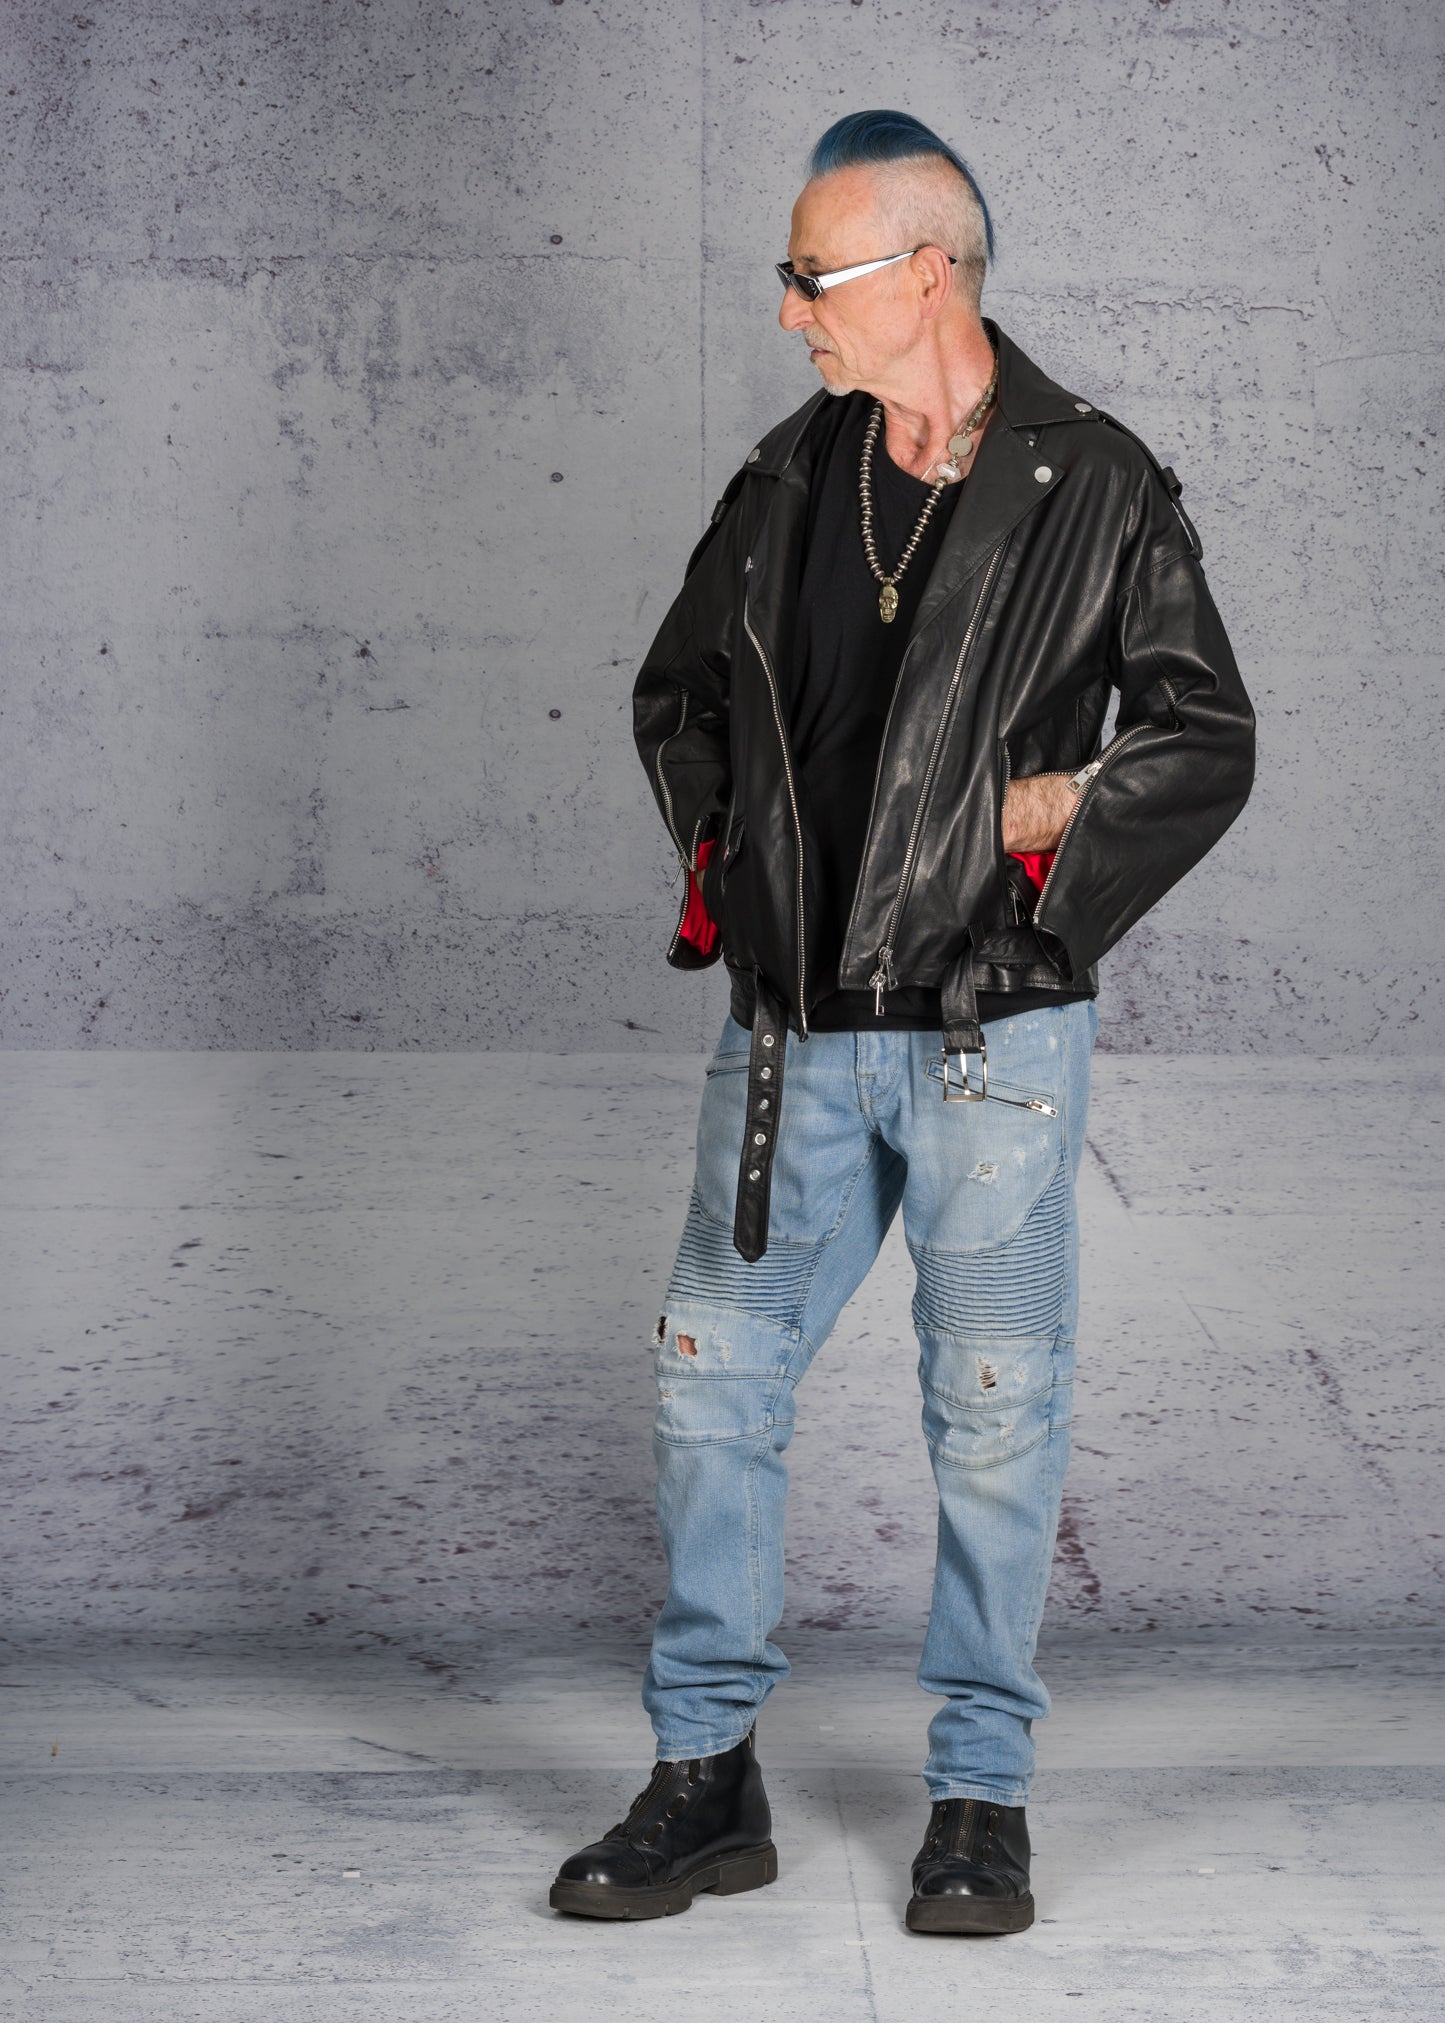 Biker rock star Leather Jacket